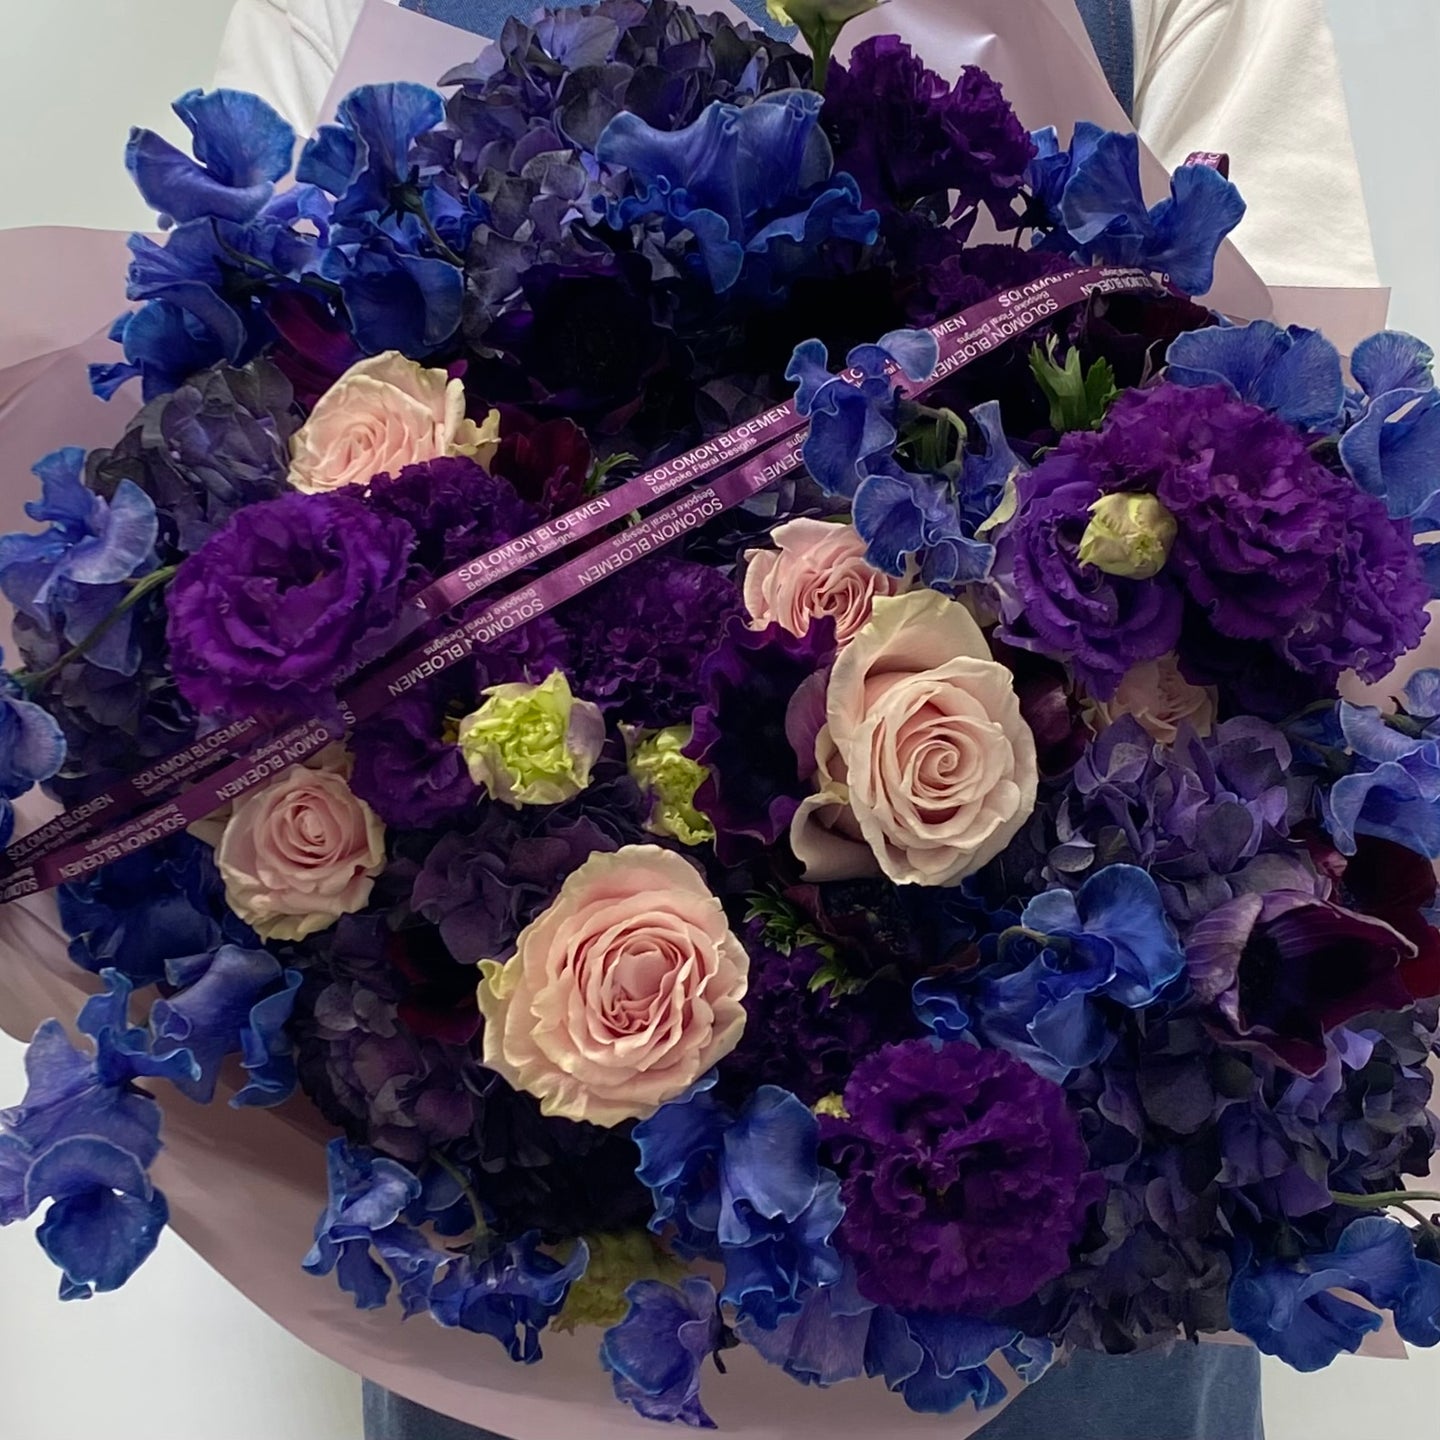 The blue bouquet